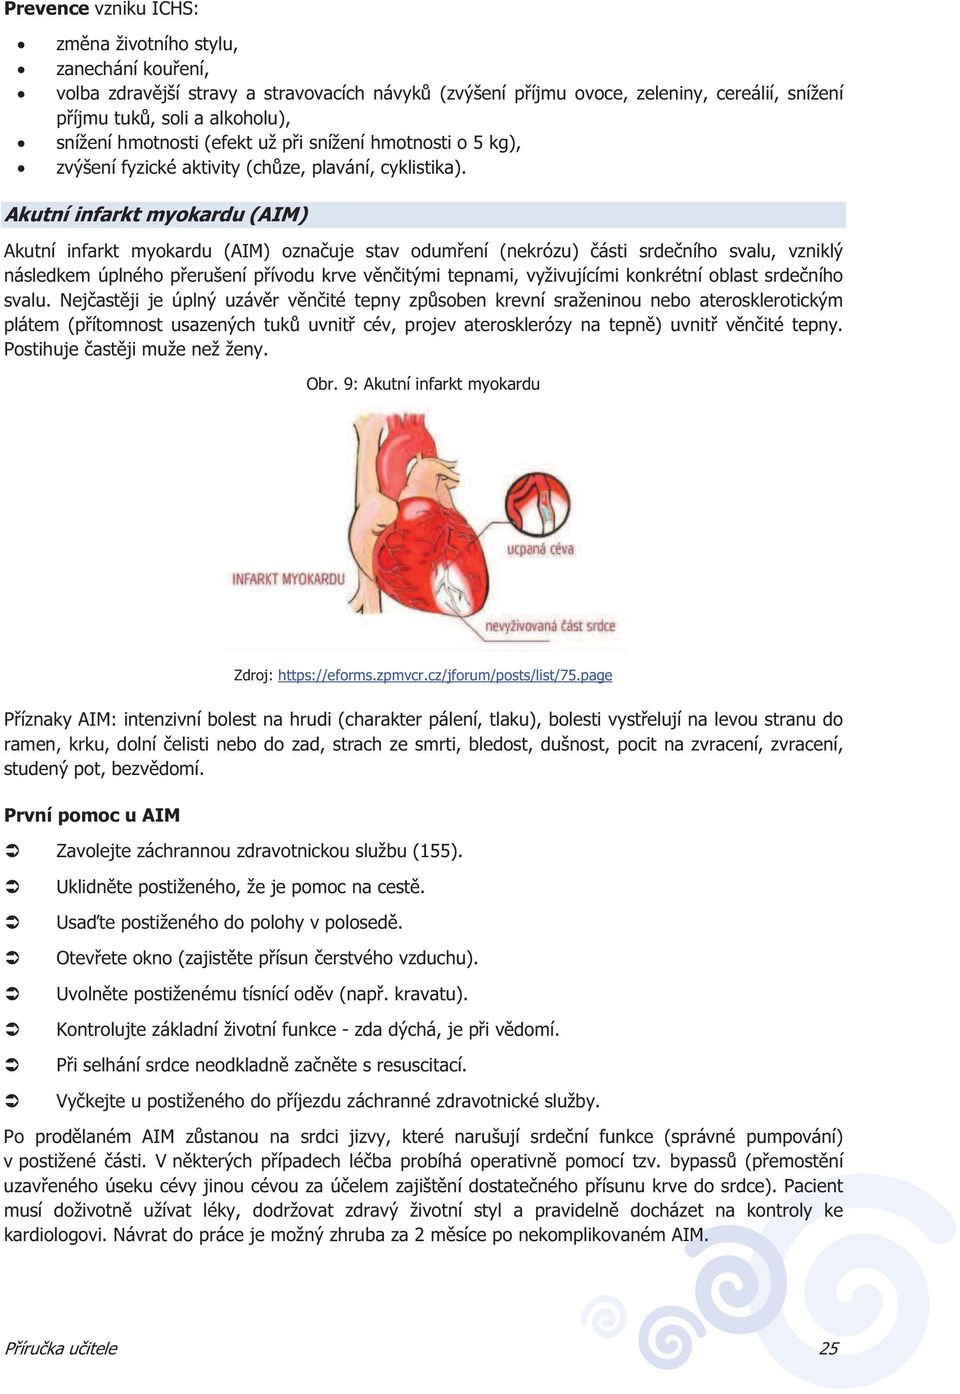 Akutní infarkt myokardu (AIM) Akutní infarkt myokardu (AIM) oznauje stav odumení (nekrózu) ásti srdeního svalu, vzniklý následkem úplného perušení pívodu krve vnitými tepnami, vyživujícími konkrétní